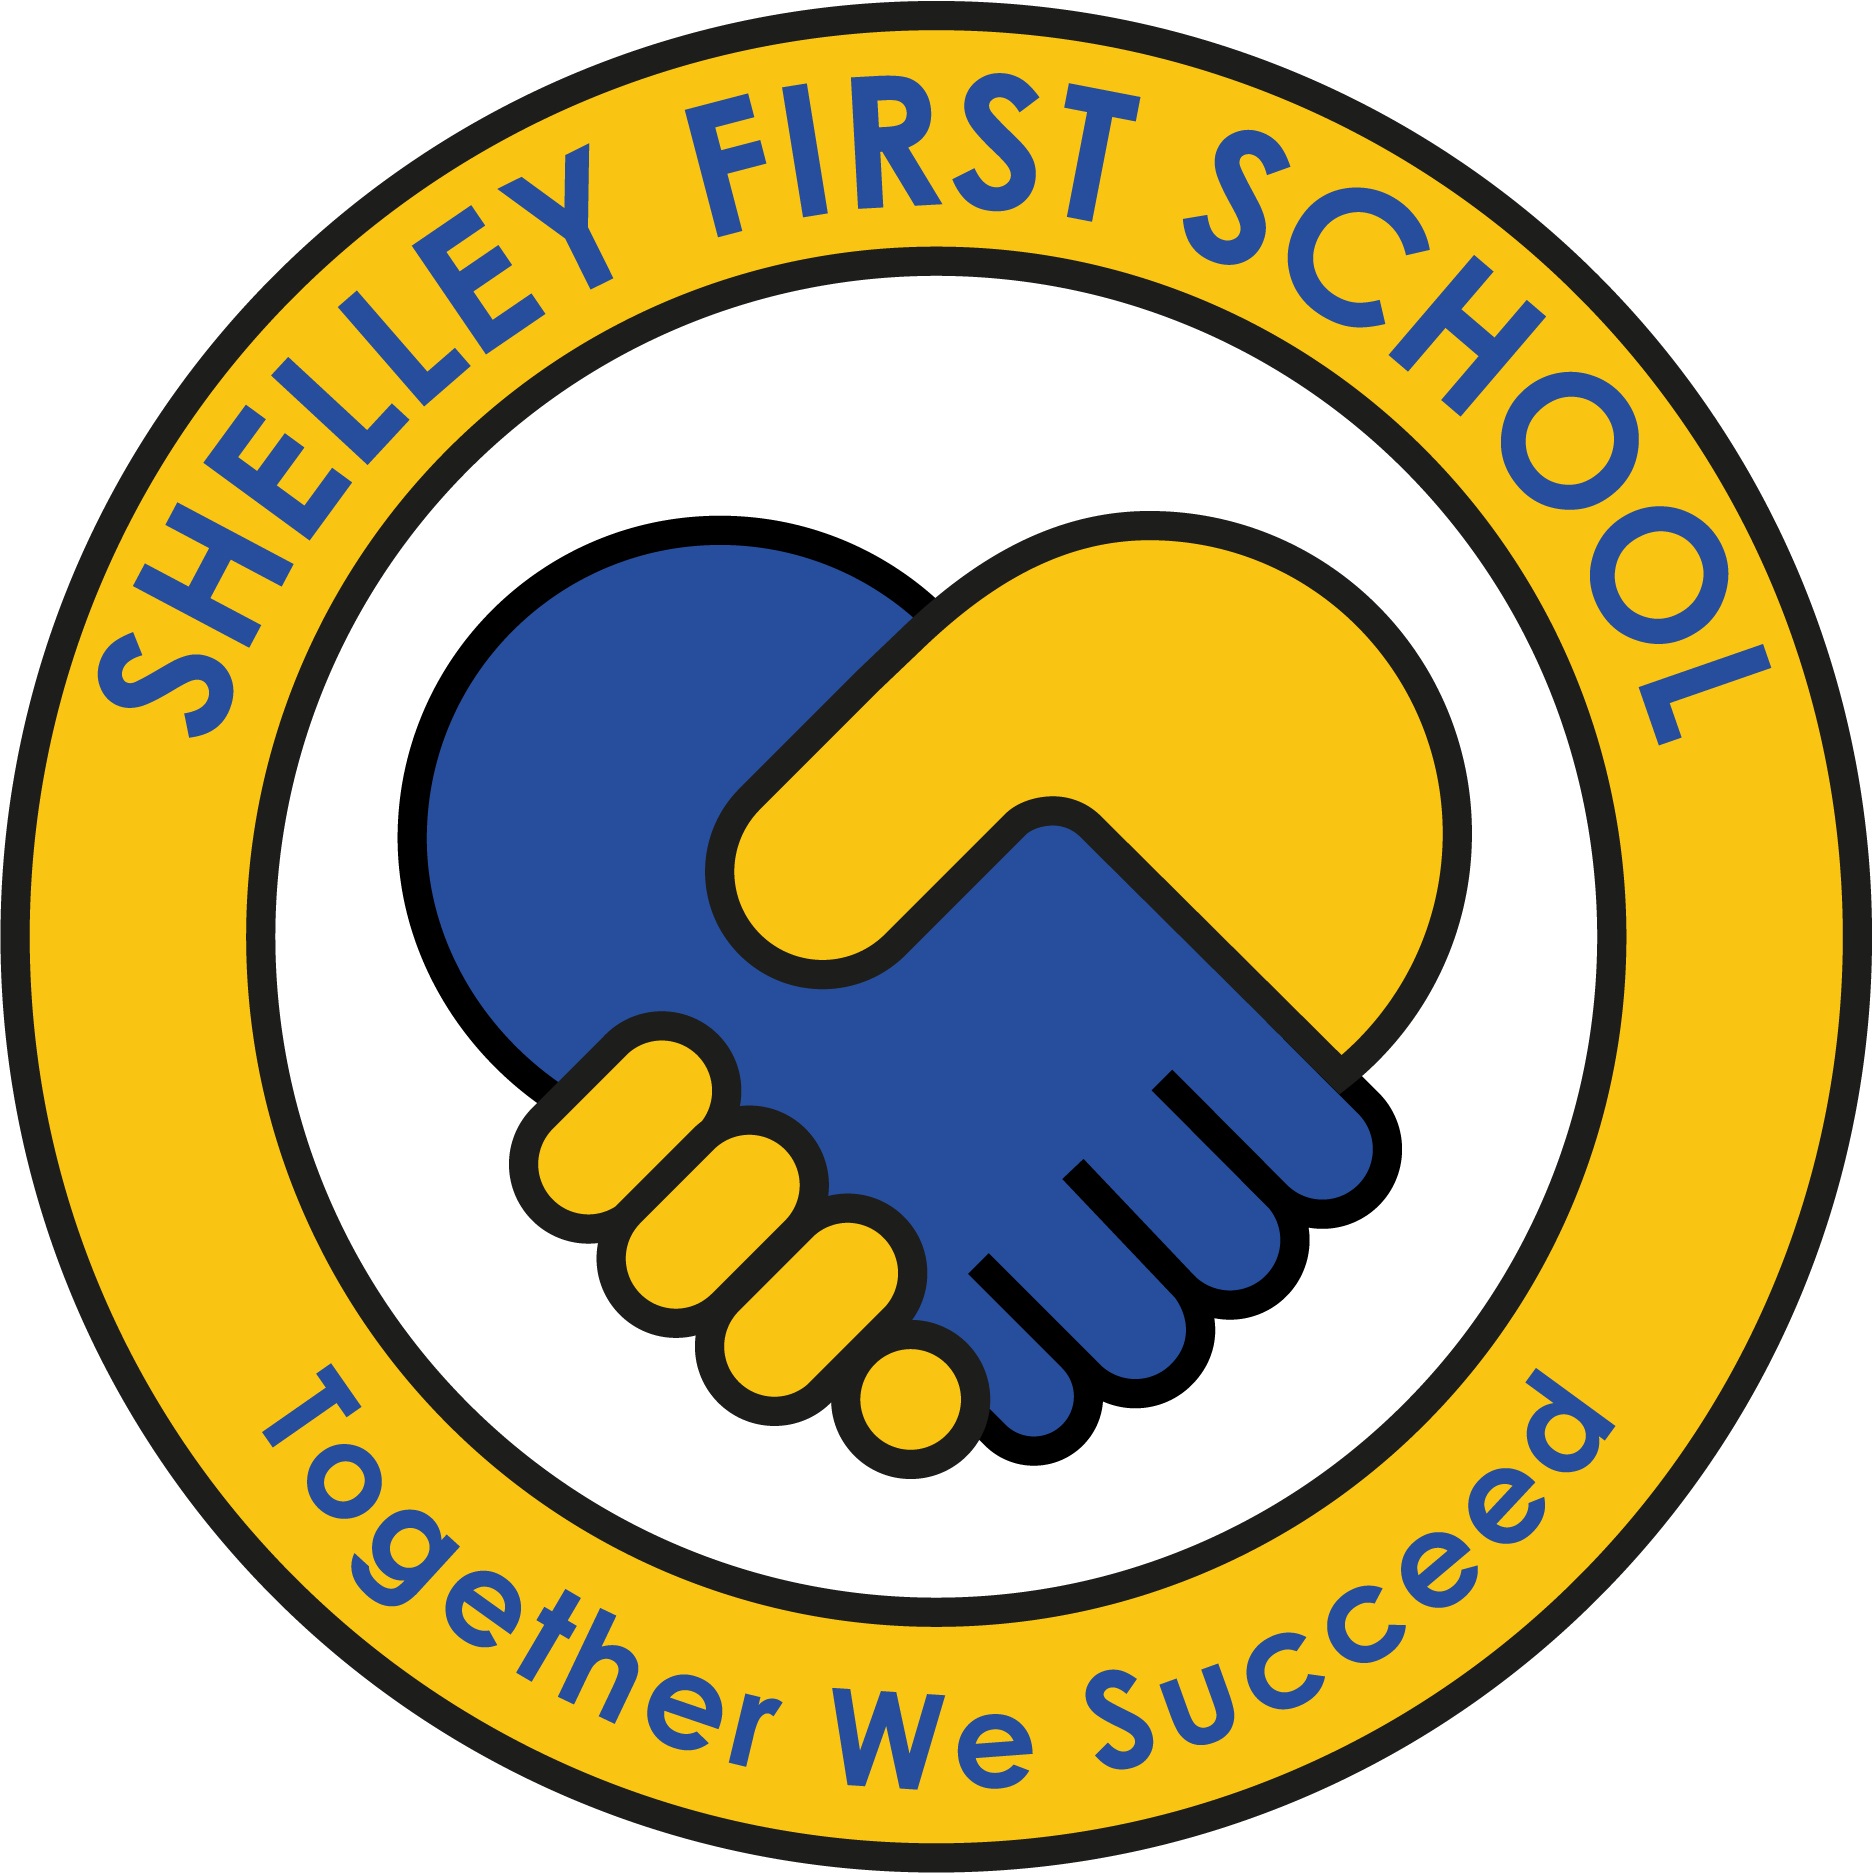 Shelley First School